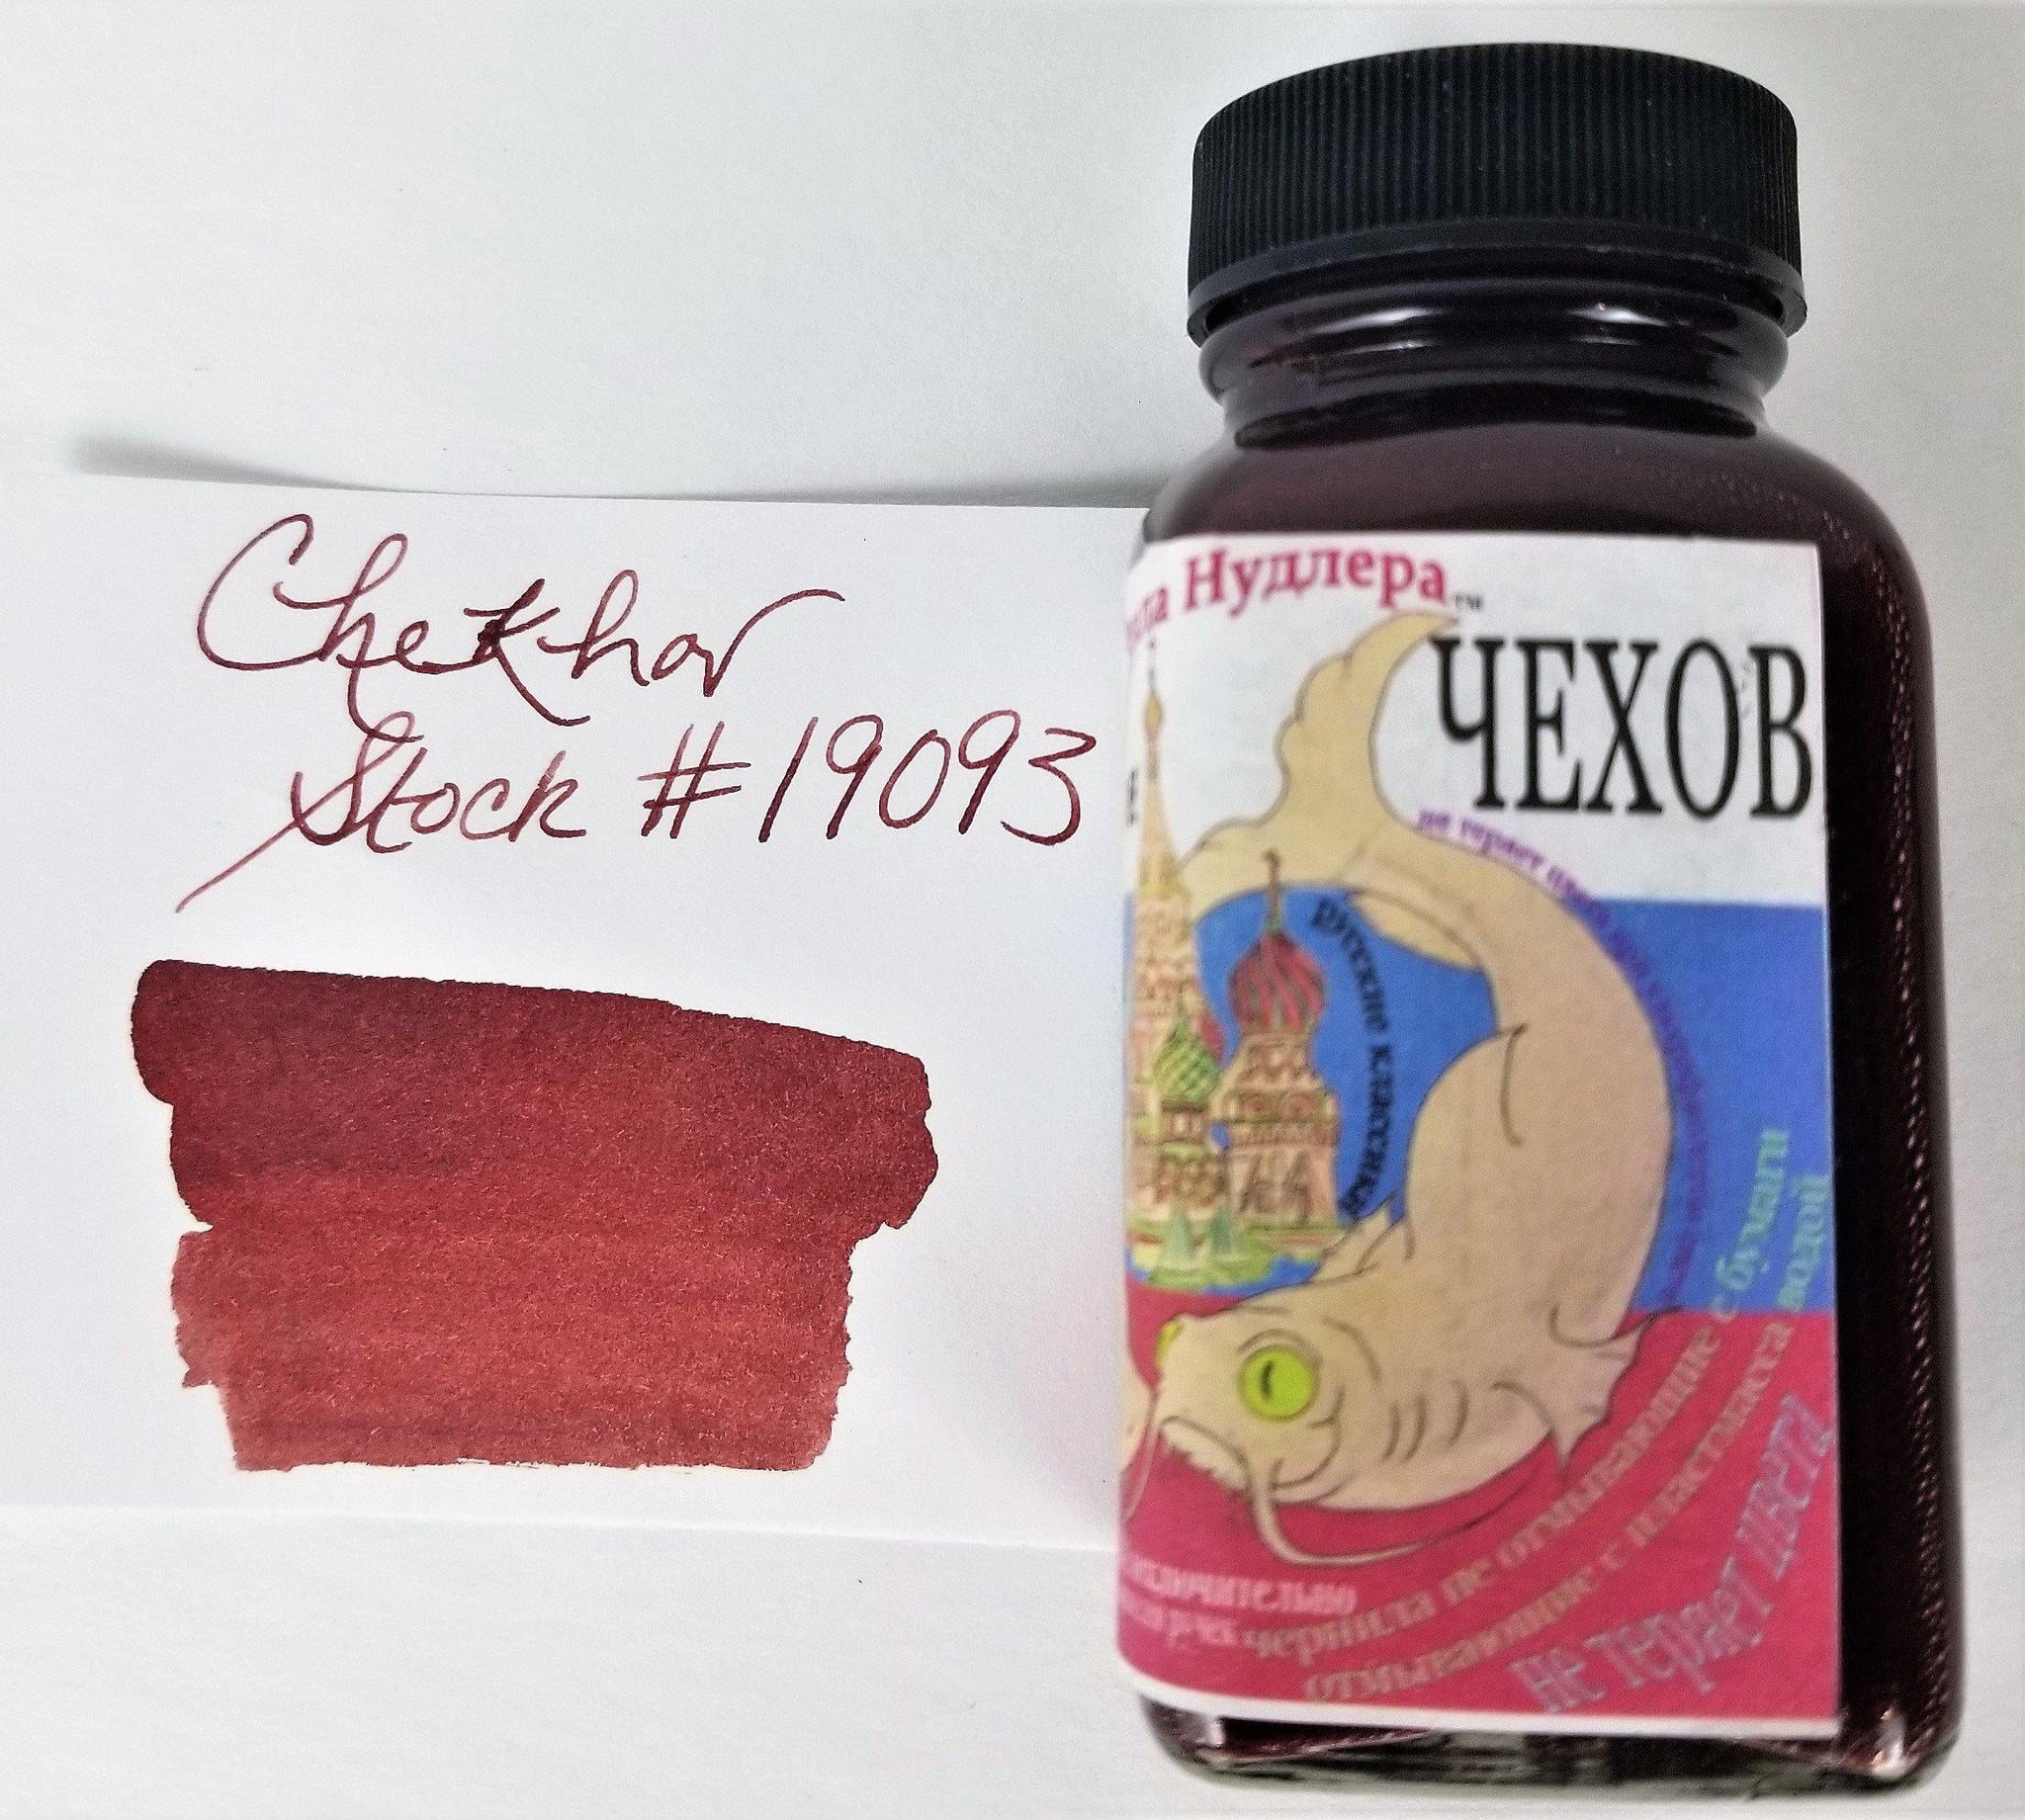 Noodler's Chekhov Bottled Ink